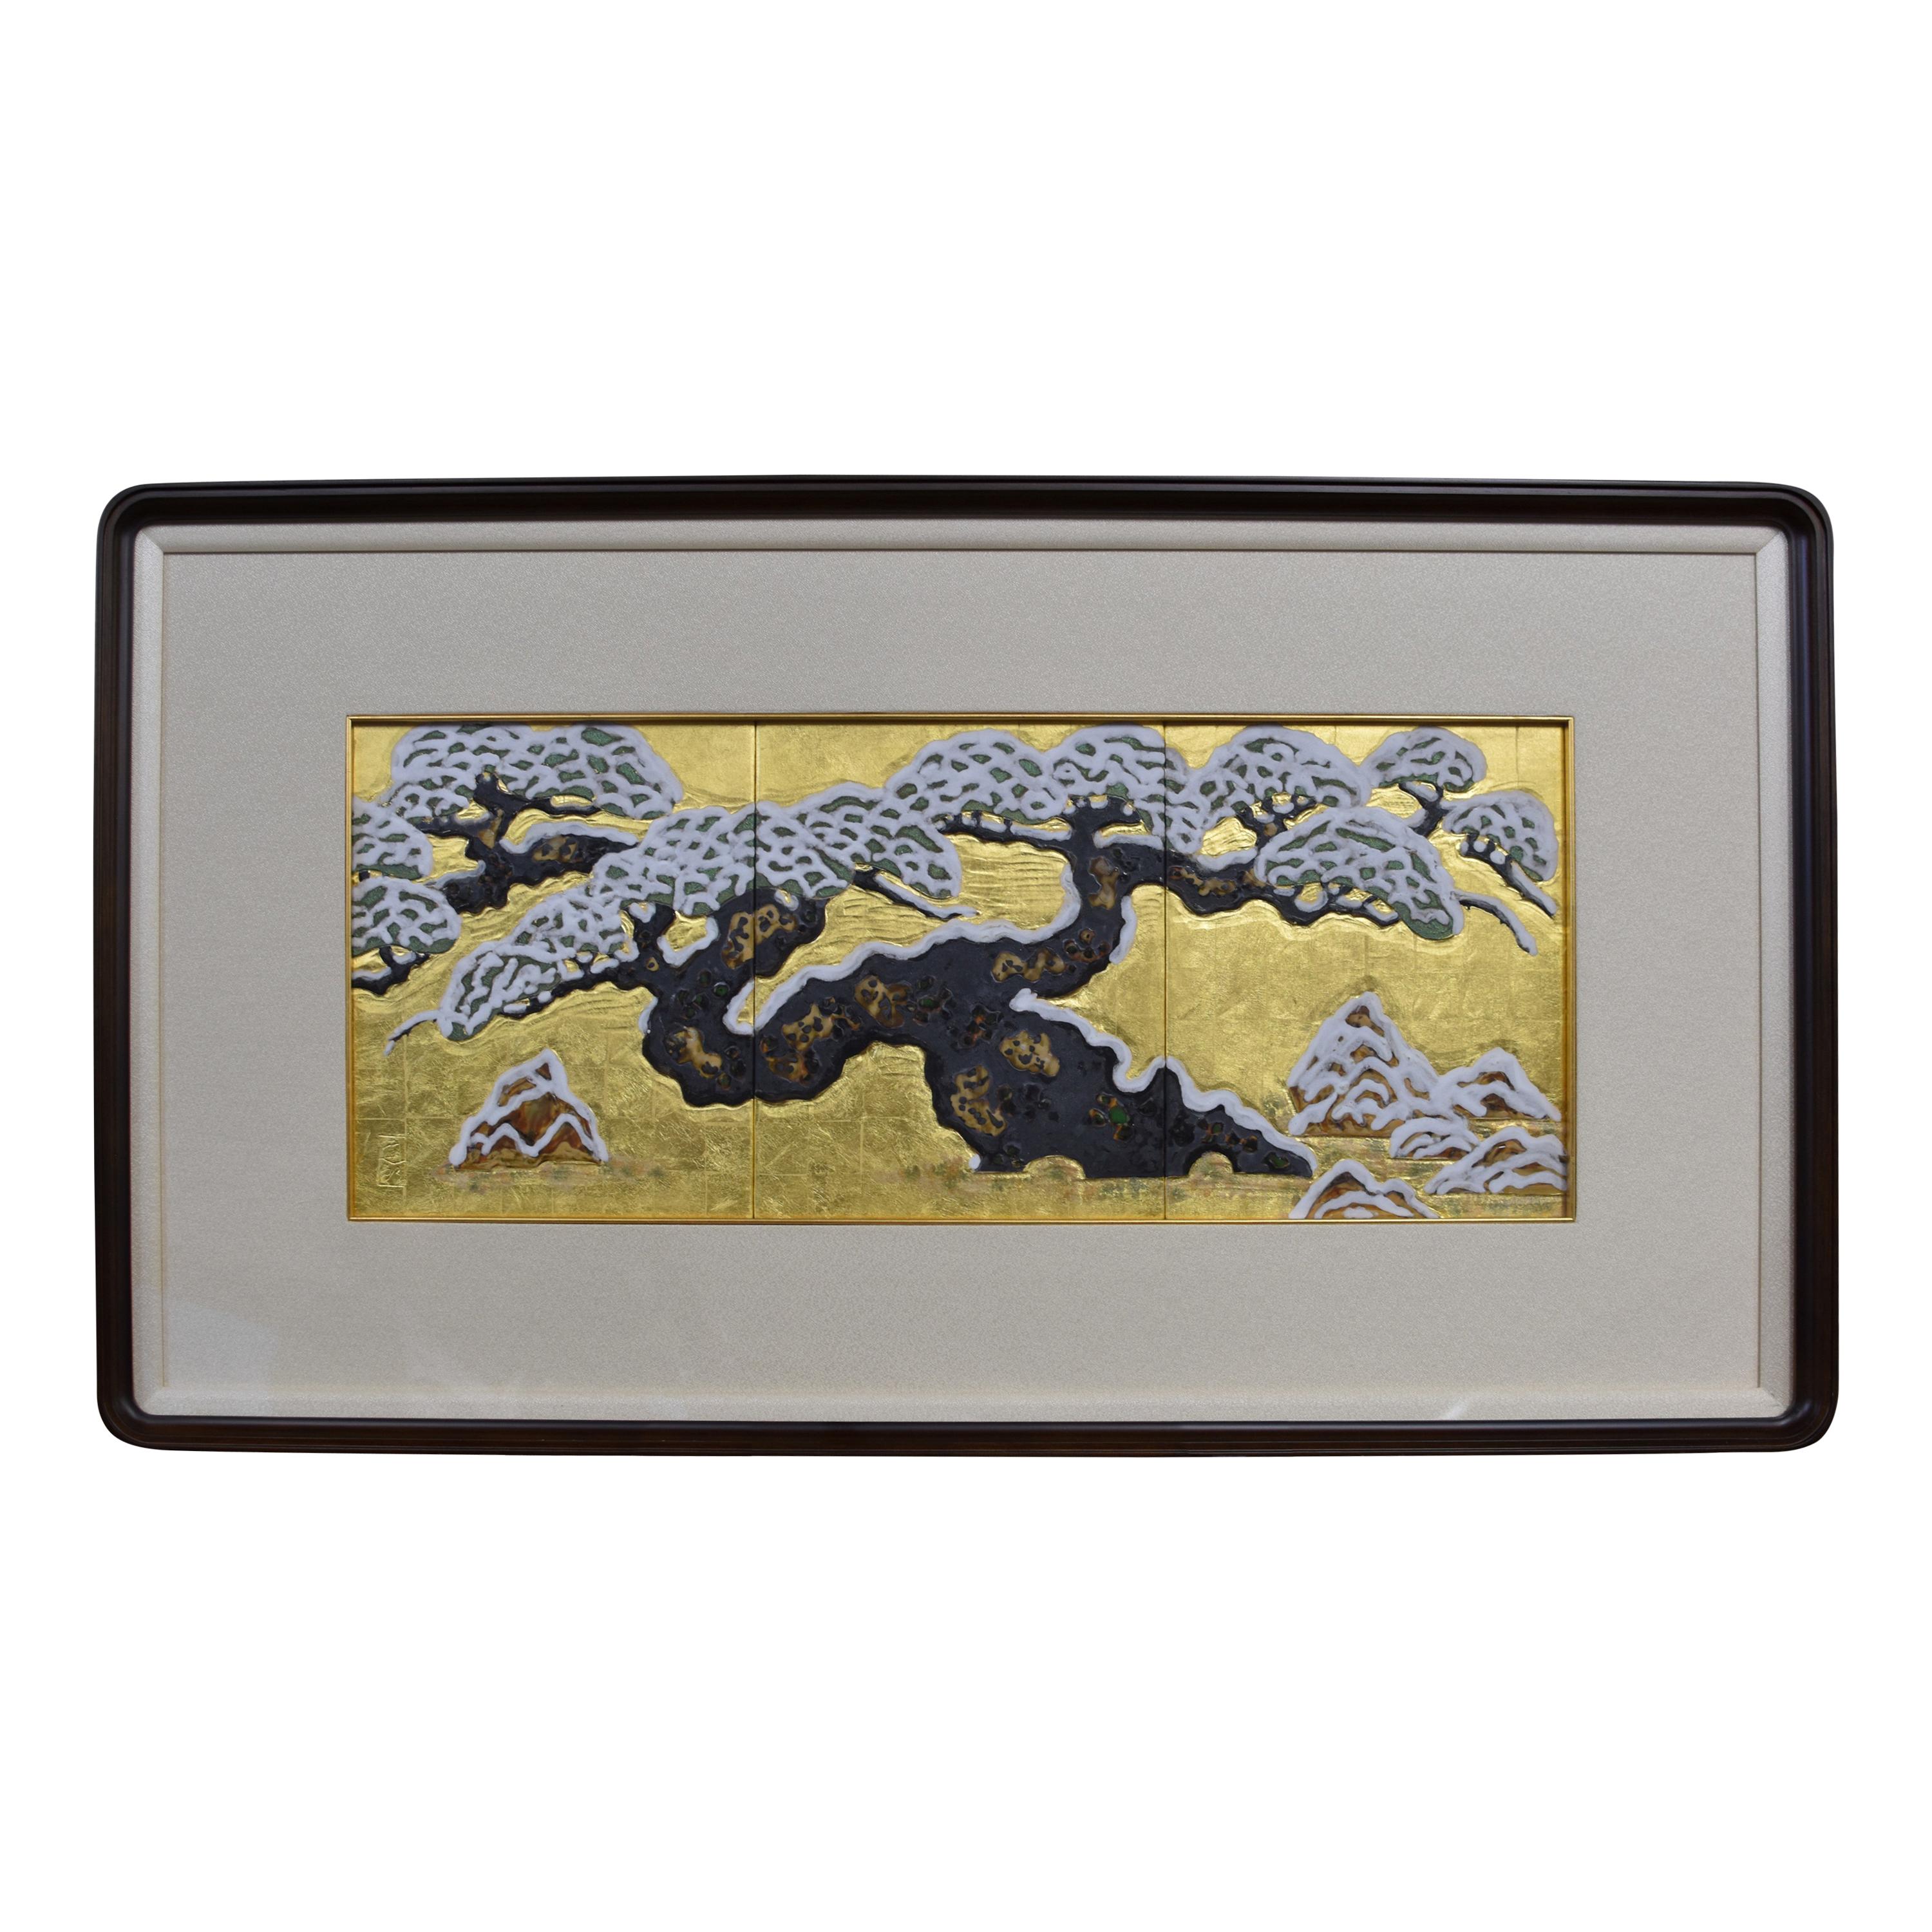 Japanese Gold Leaf Hand Painted Framed Porcelain Panel by Master Artist For Sale